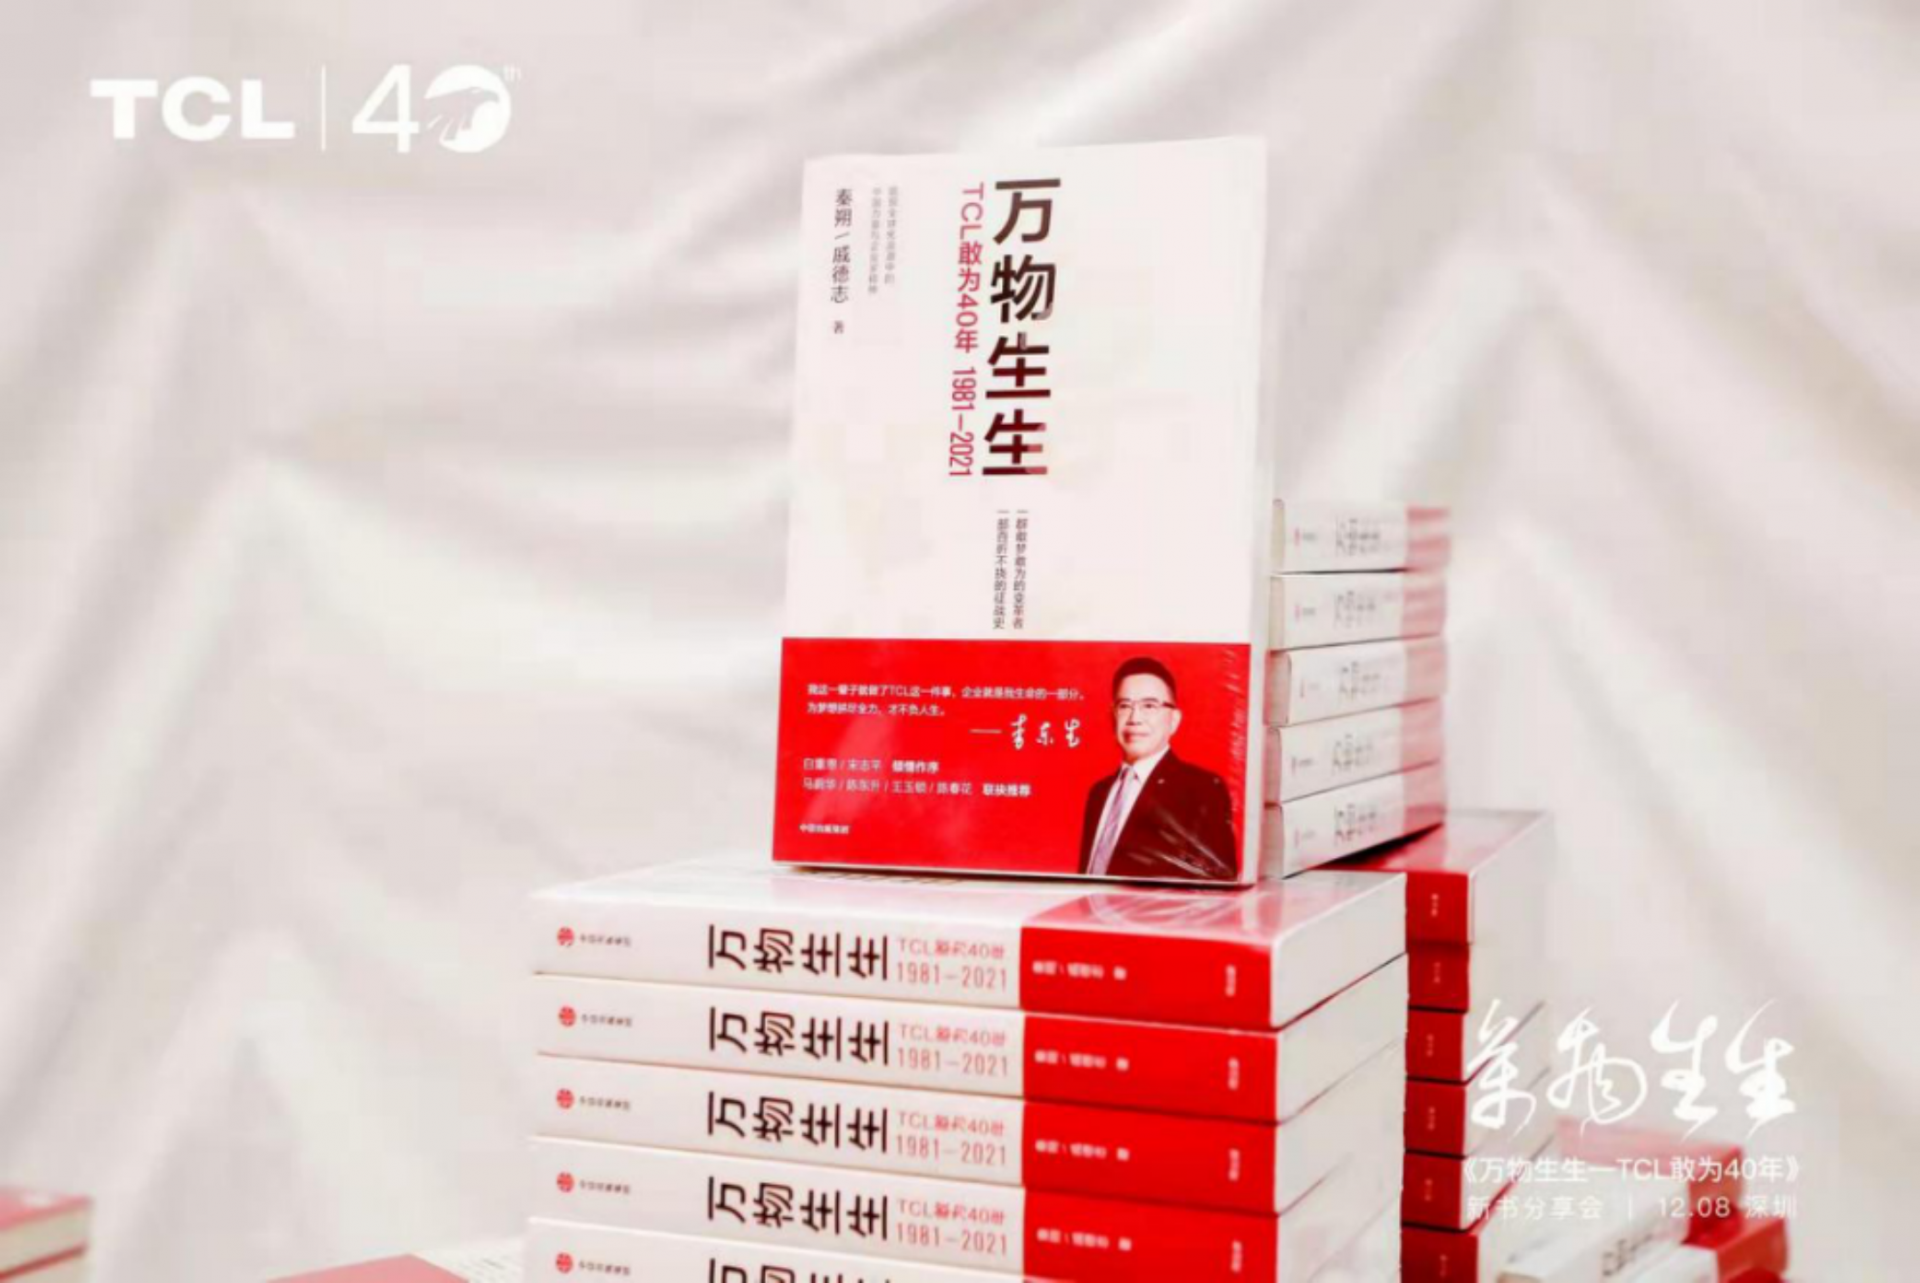 《万物生生》新书分享会在深举行:“中国科技企业成长带给年轻人更多机会”